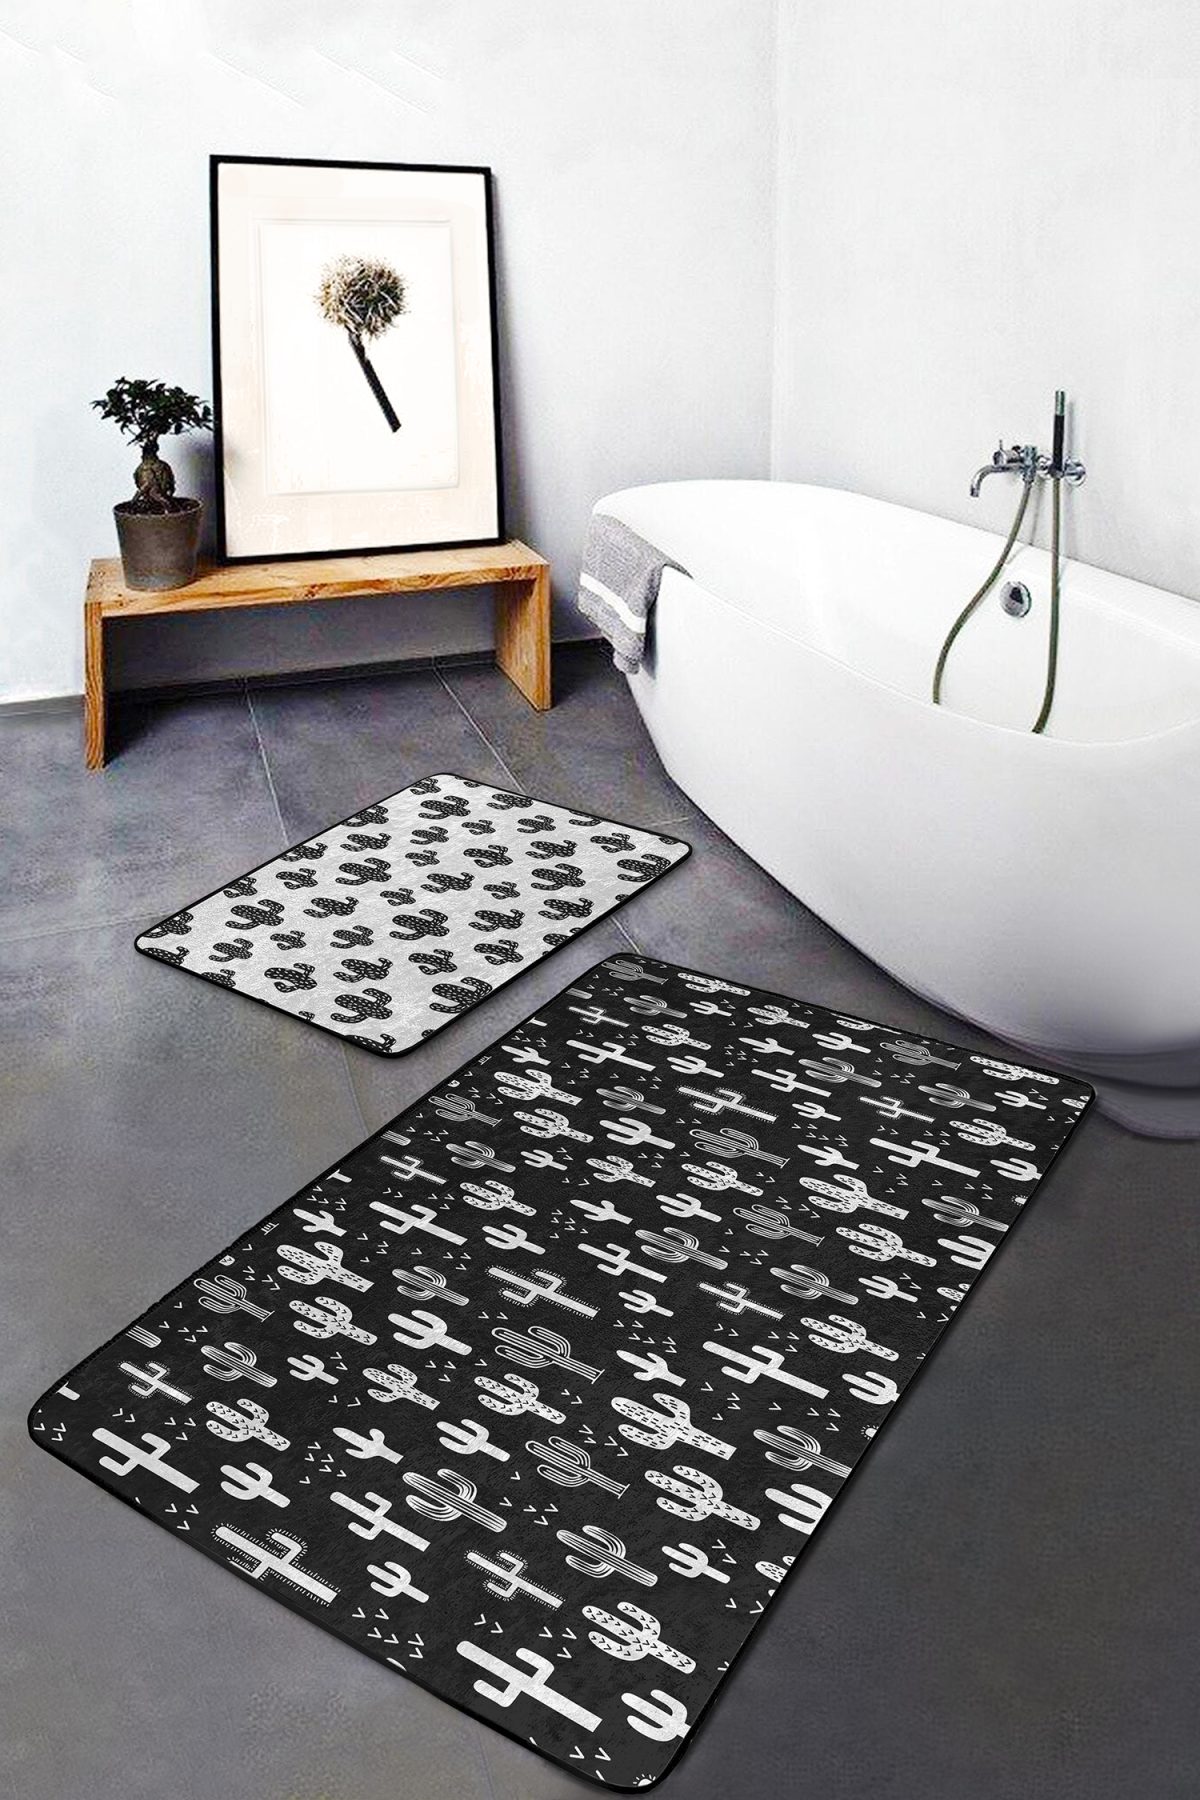 Siyah Beyaz Kaktüs Motifli Özel Tasarım 2'li Kaymaz Tabanlı Banyo & Mutfak Paspas Takımı Realhomes